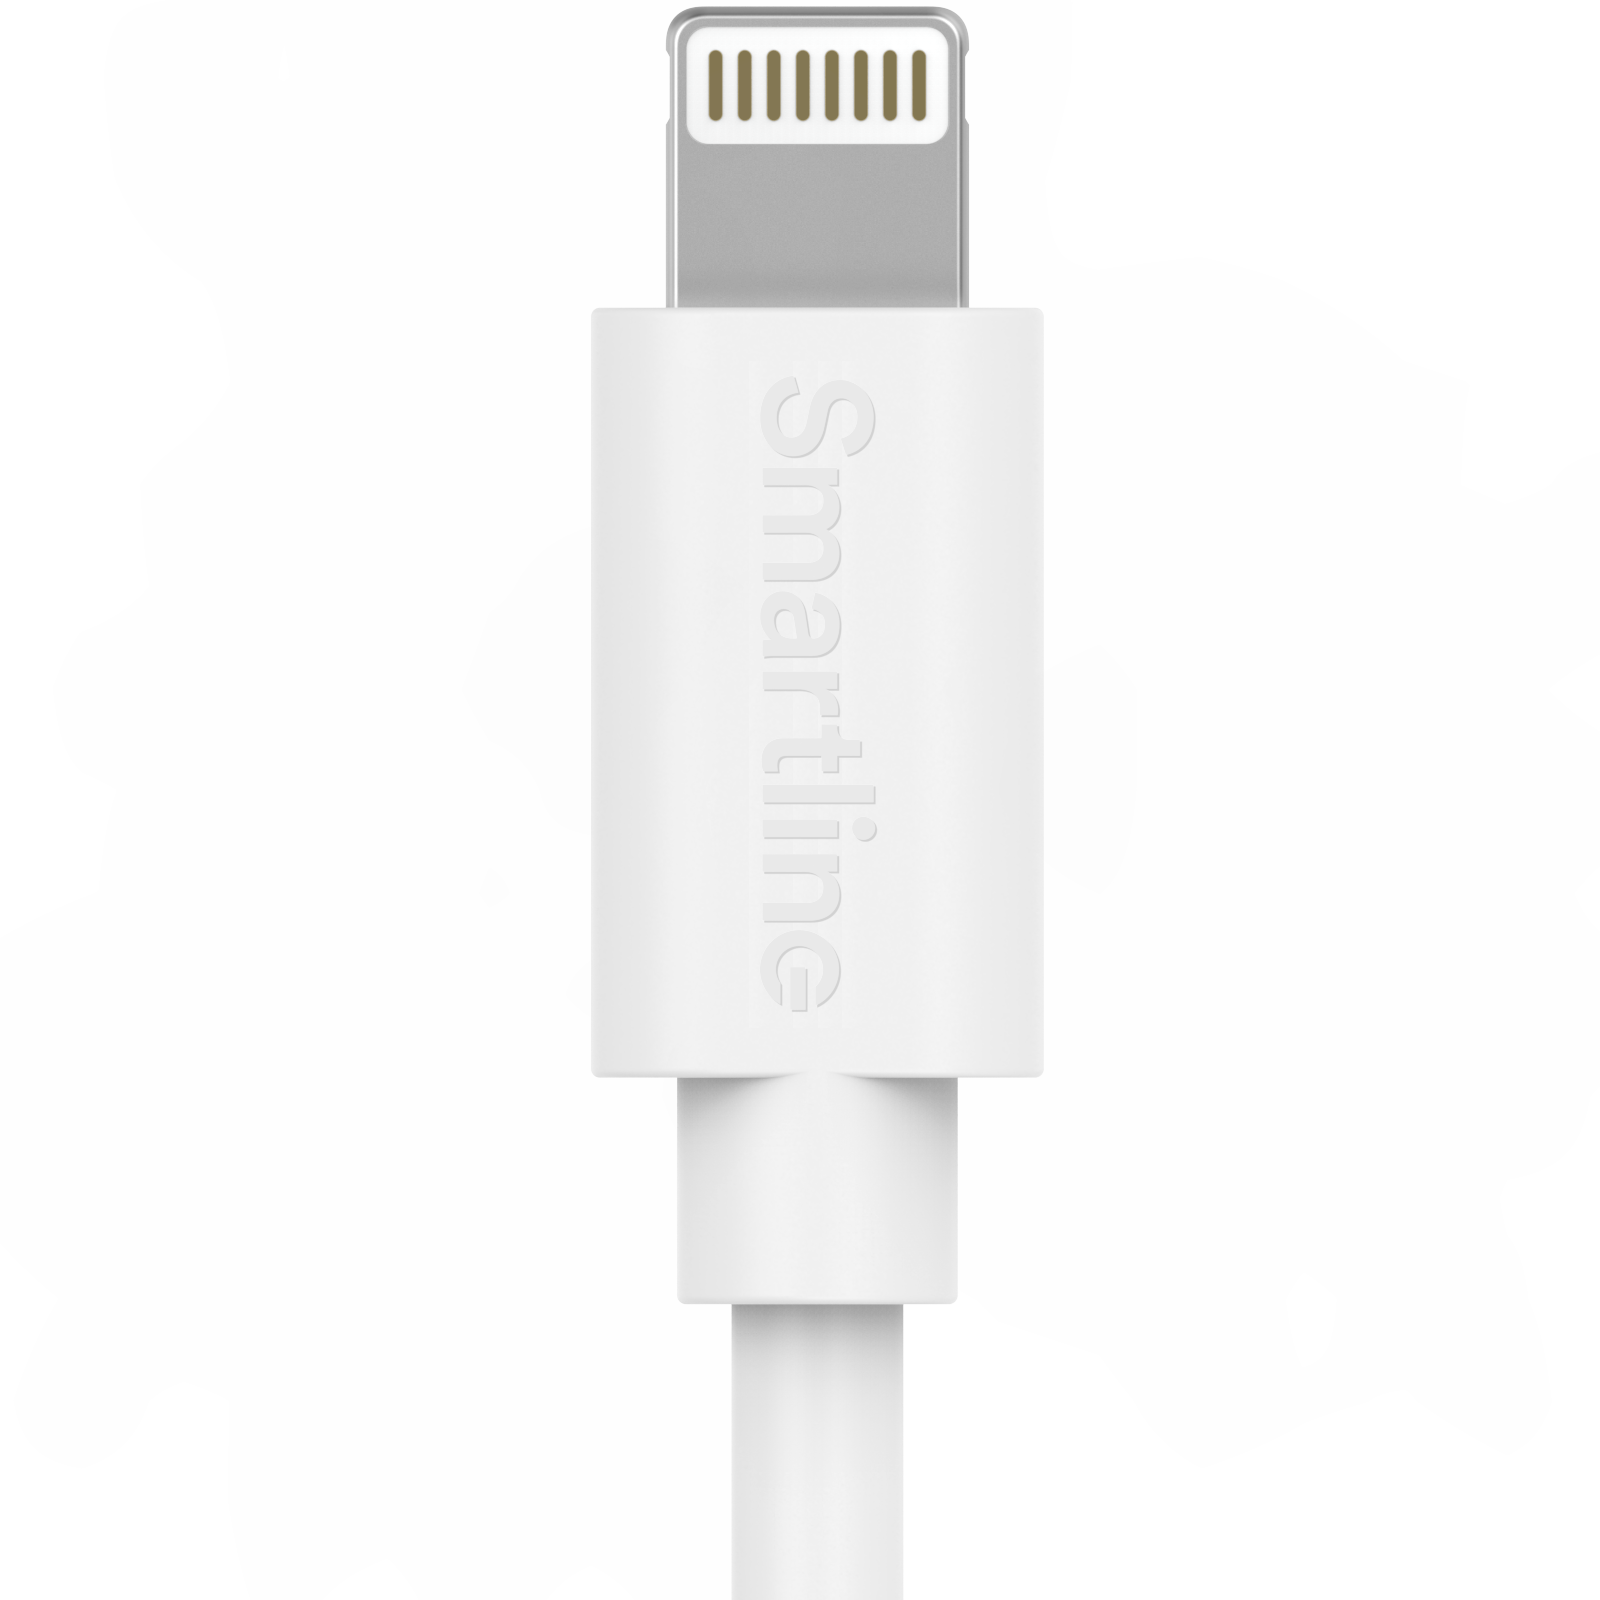 Chargeur complet pour iPhone X/XS - Câble de 2m et chargeur mural -  Smartline